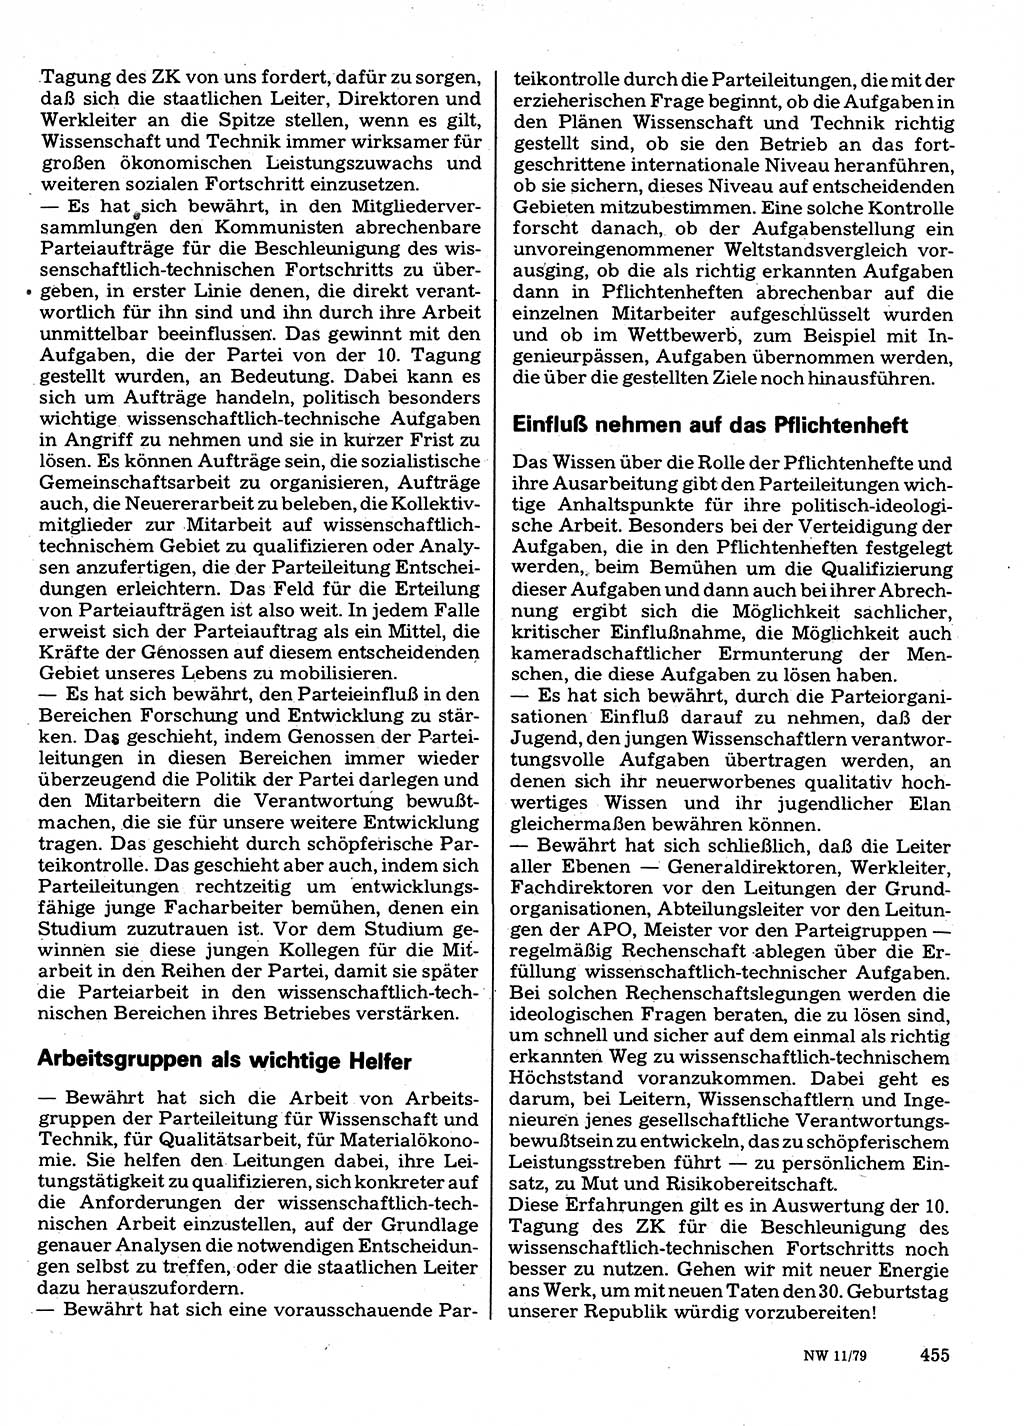 Neuer Weg (NW), Organ des Zentralkomitees (ZK) der SED (Sozialistische Einheitspartei Deutschlands) für Fragen des Parteilebens, 34. Jahrgang [Deutsche Demokratische Republik (DDR)] 1979, Seite 455 (NW ZK SED DDR 1979, S. 455)